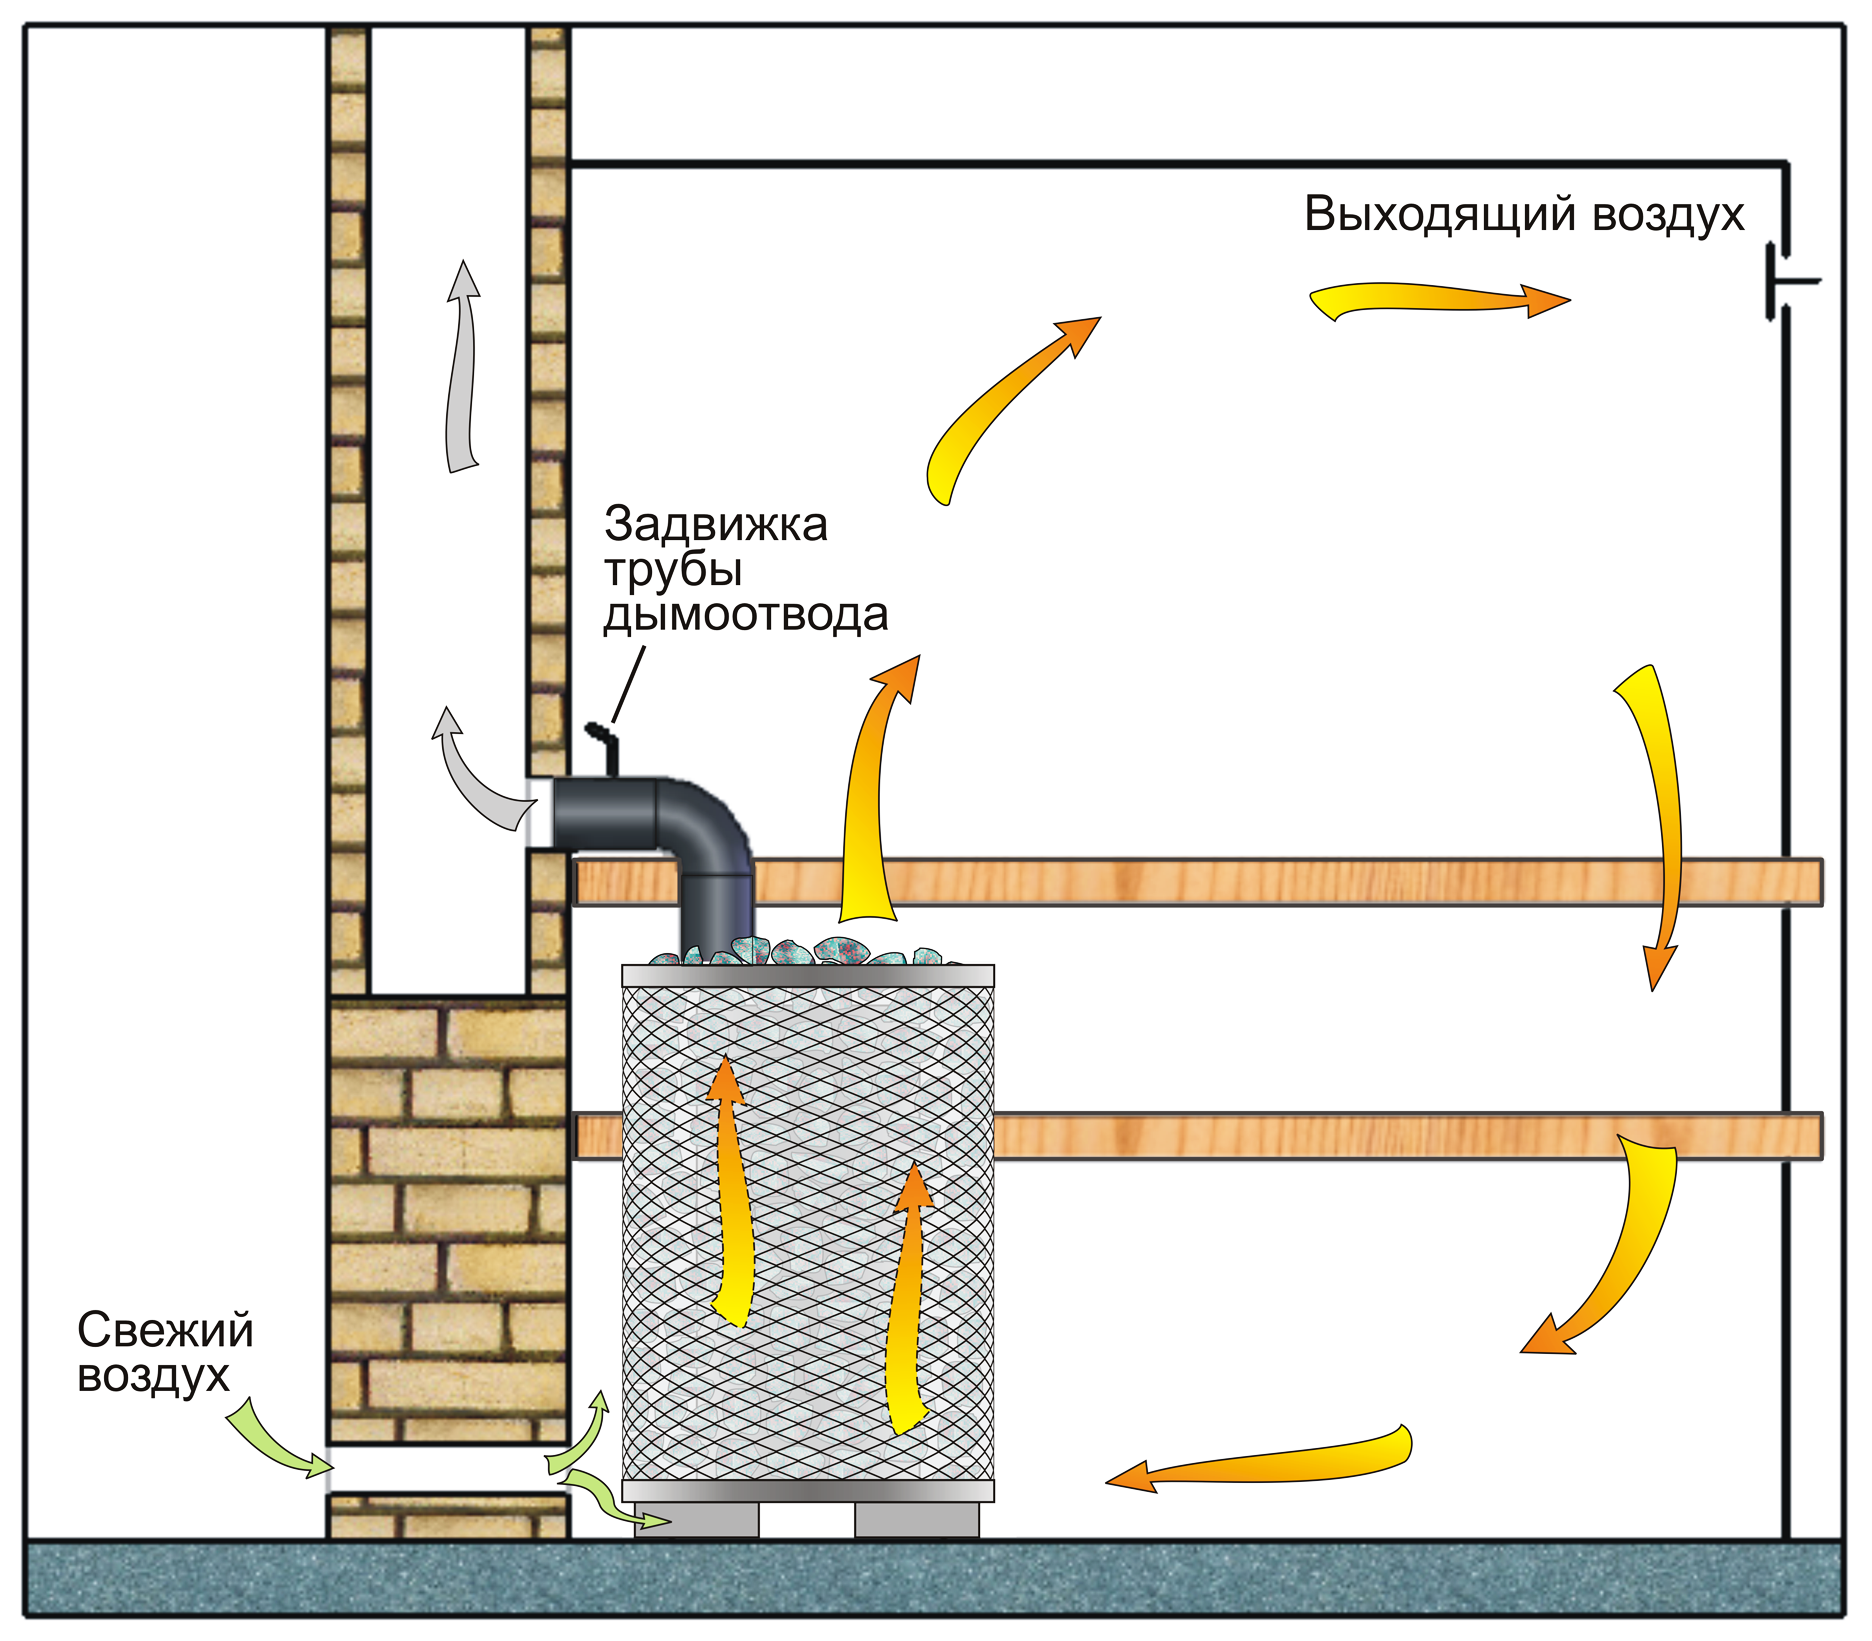 Схема приточно-вытяжной вентиляции в бане